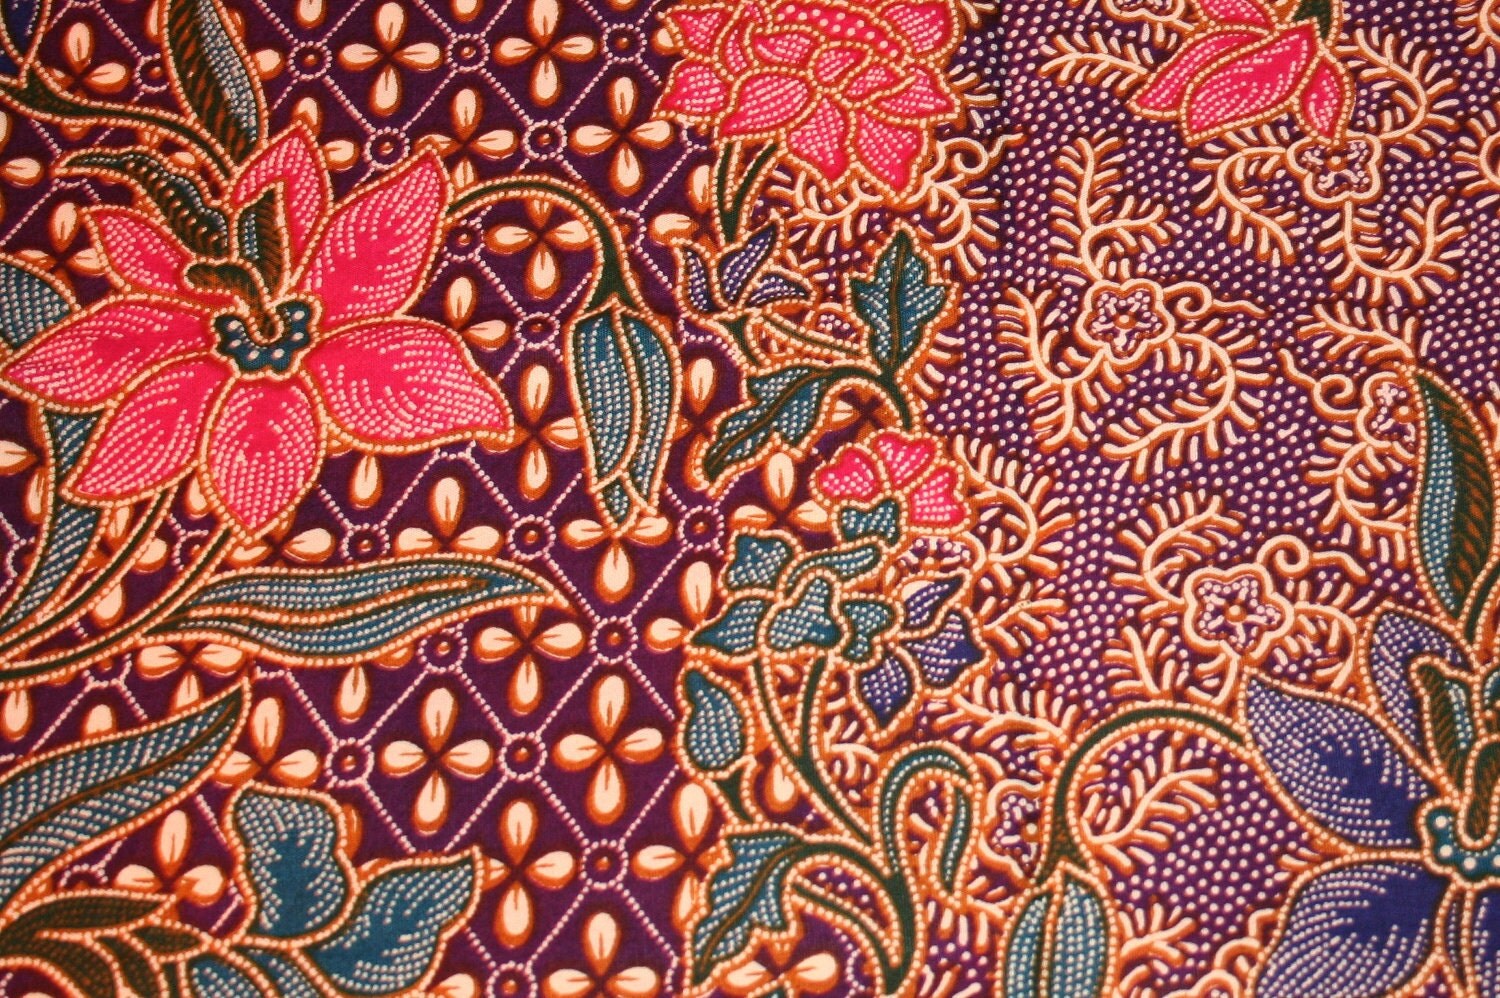 Singapore Batik Cotton Fabric. by patternsandkits on Etsy